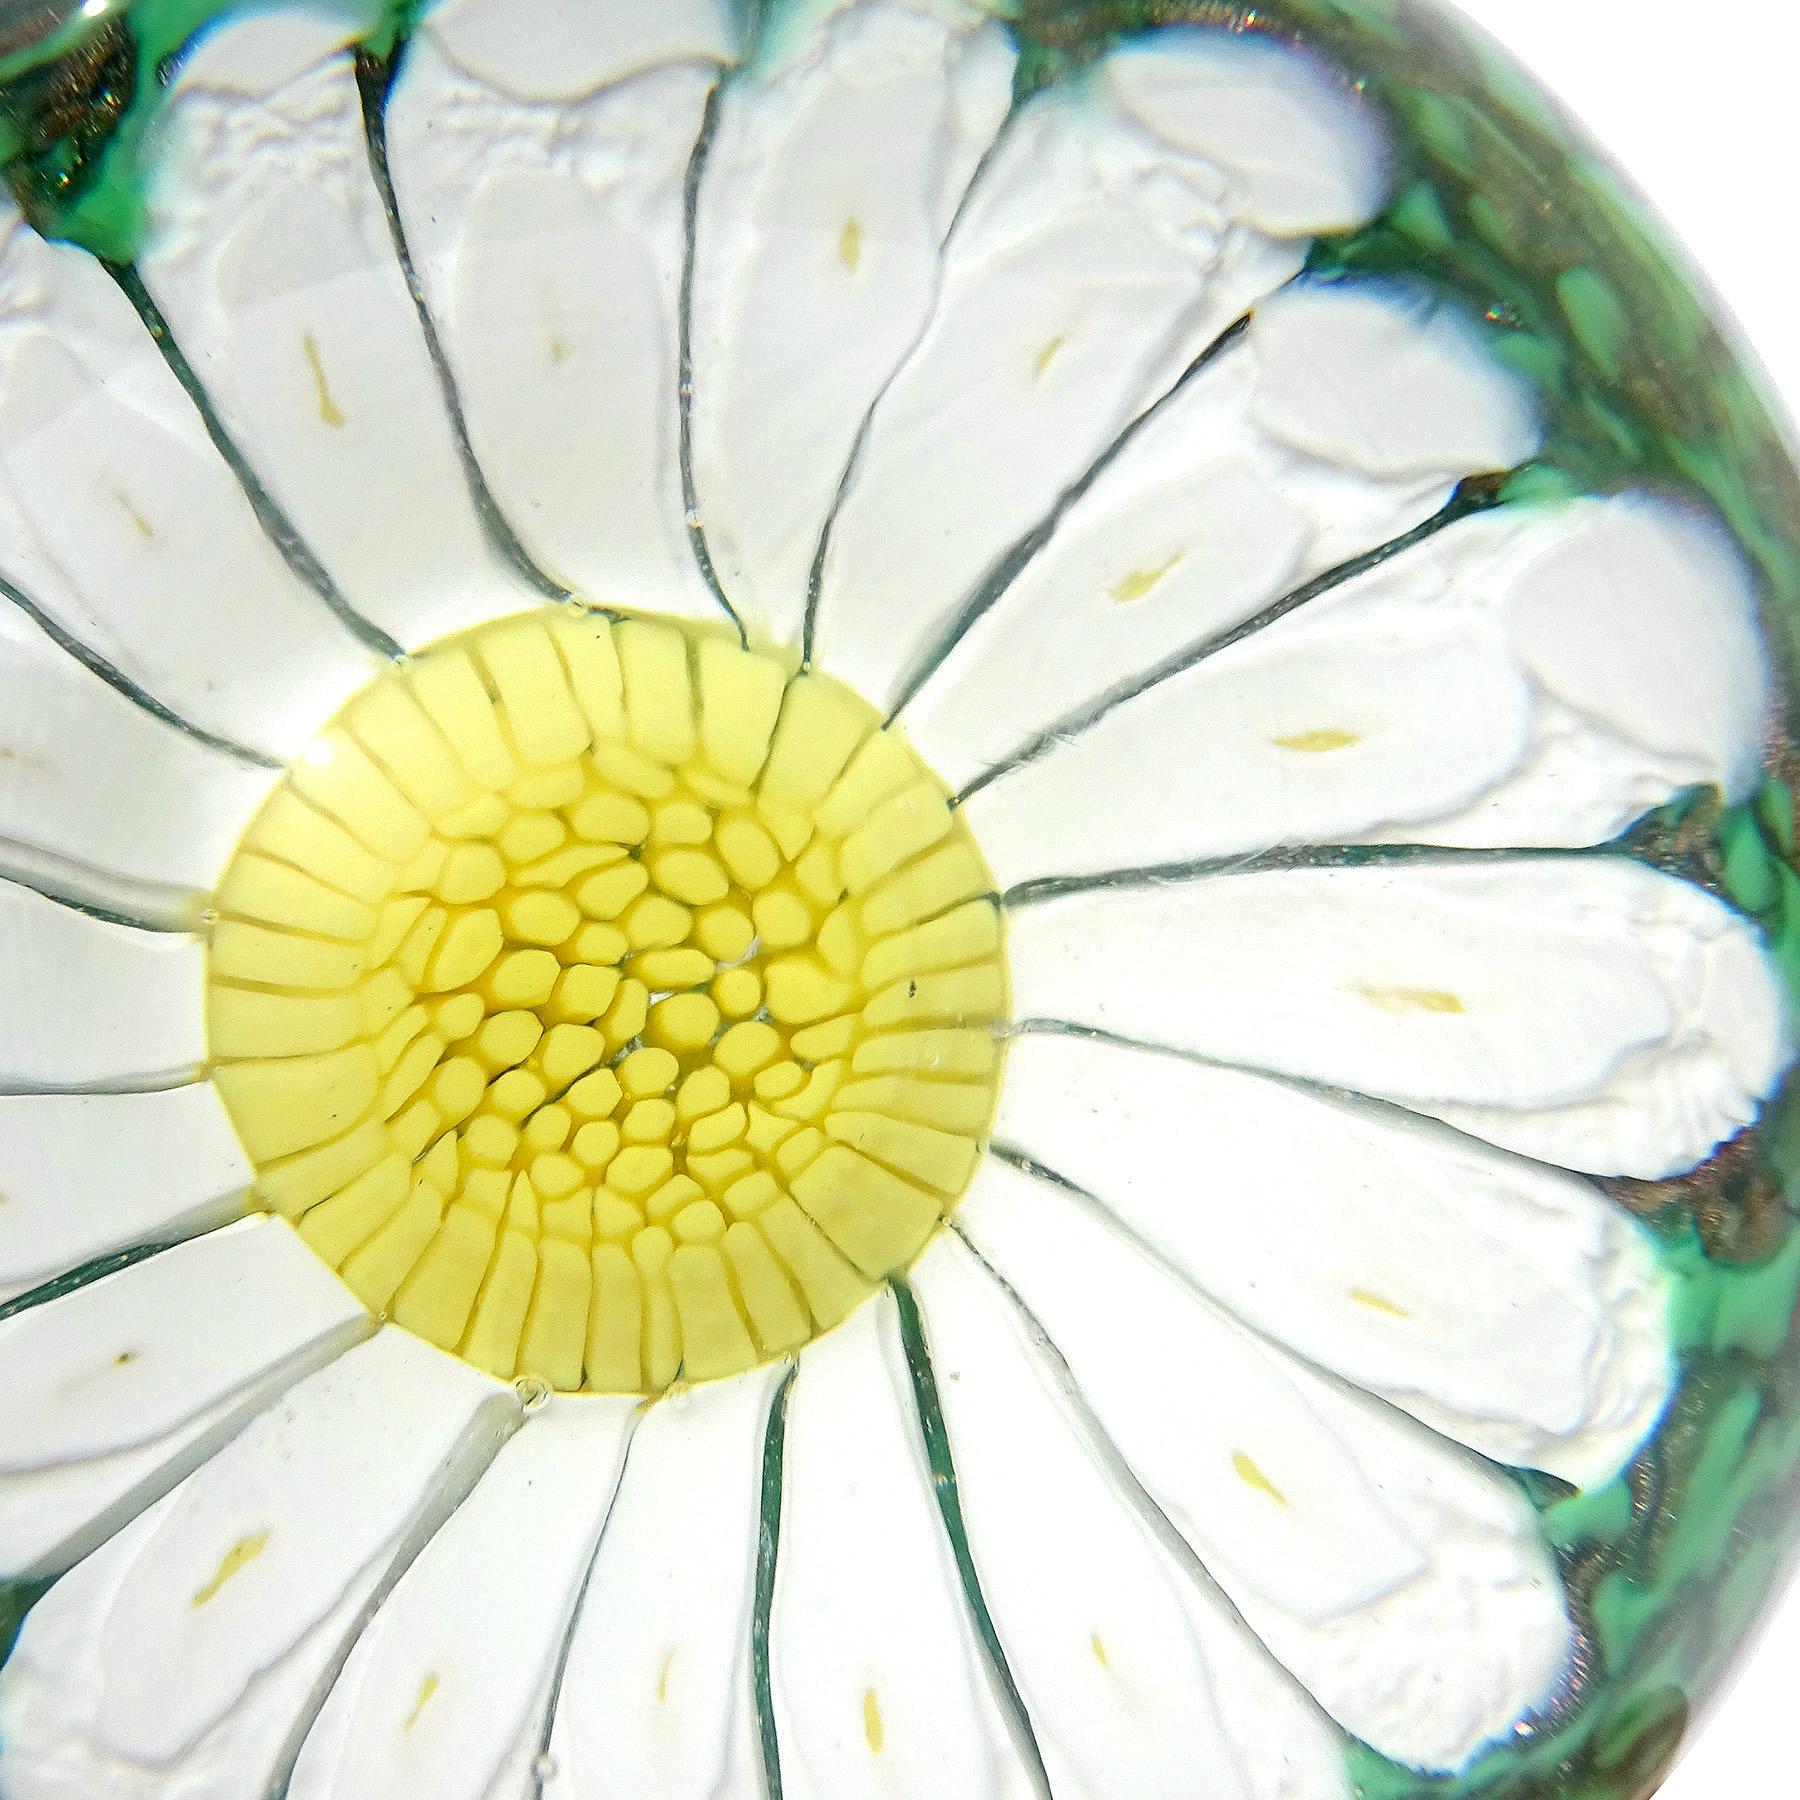 Bellissimo fermacarte vintage in vetro artistico di Murano soffiato a mano con fiori di margherita bianchi e gialli. Documentato all'azienda Fratelli Toso. Il fermacarte ha una grande margherita composta da petali bianchi, con piccoli punti gialli